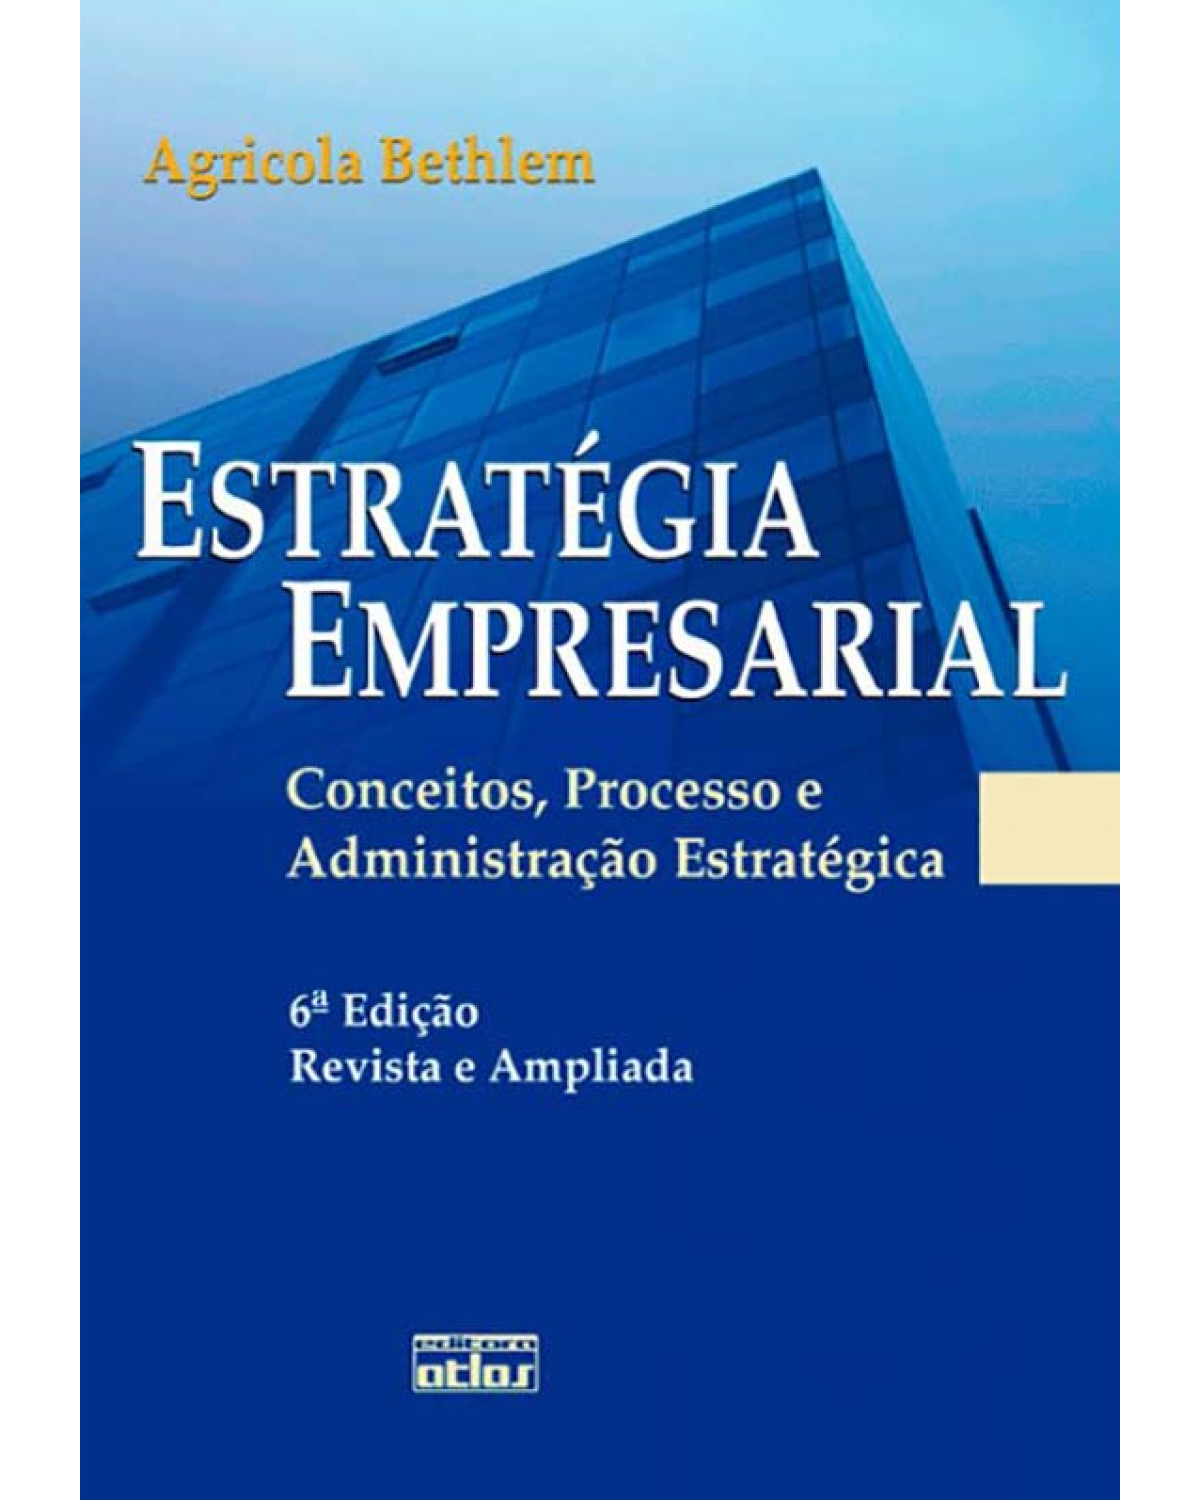 Estratégia empresarial - Conceitos, processo e administração estratégica - 6ª Edição | 2009